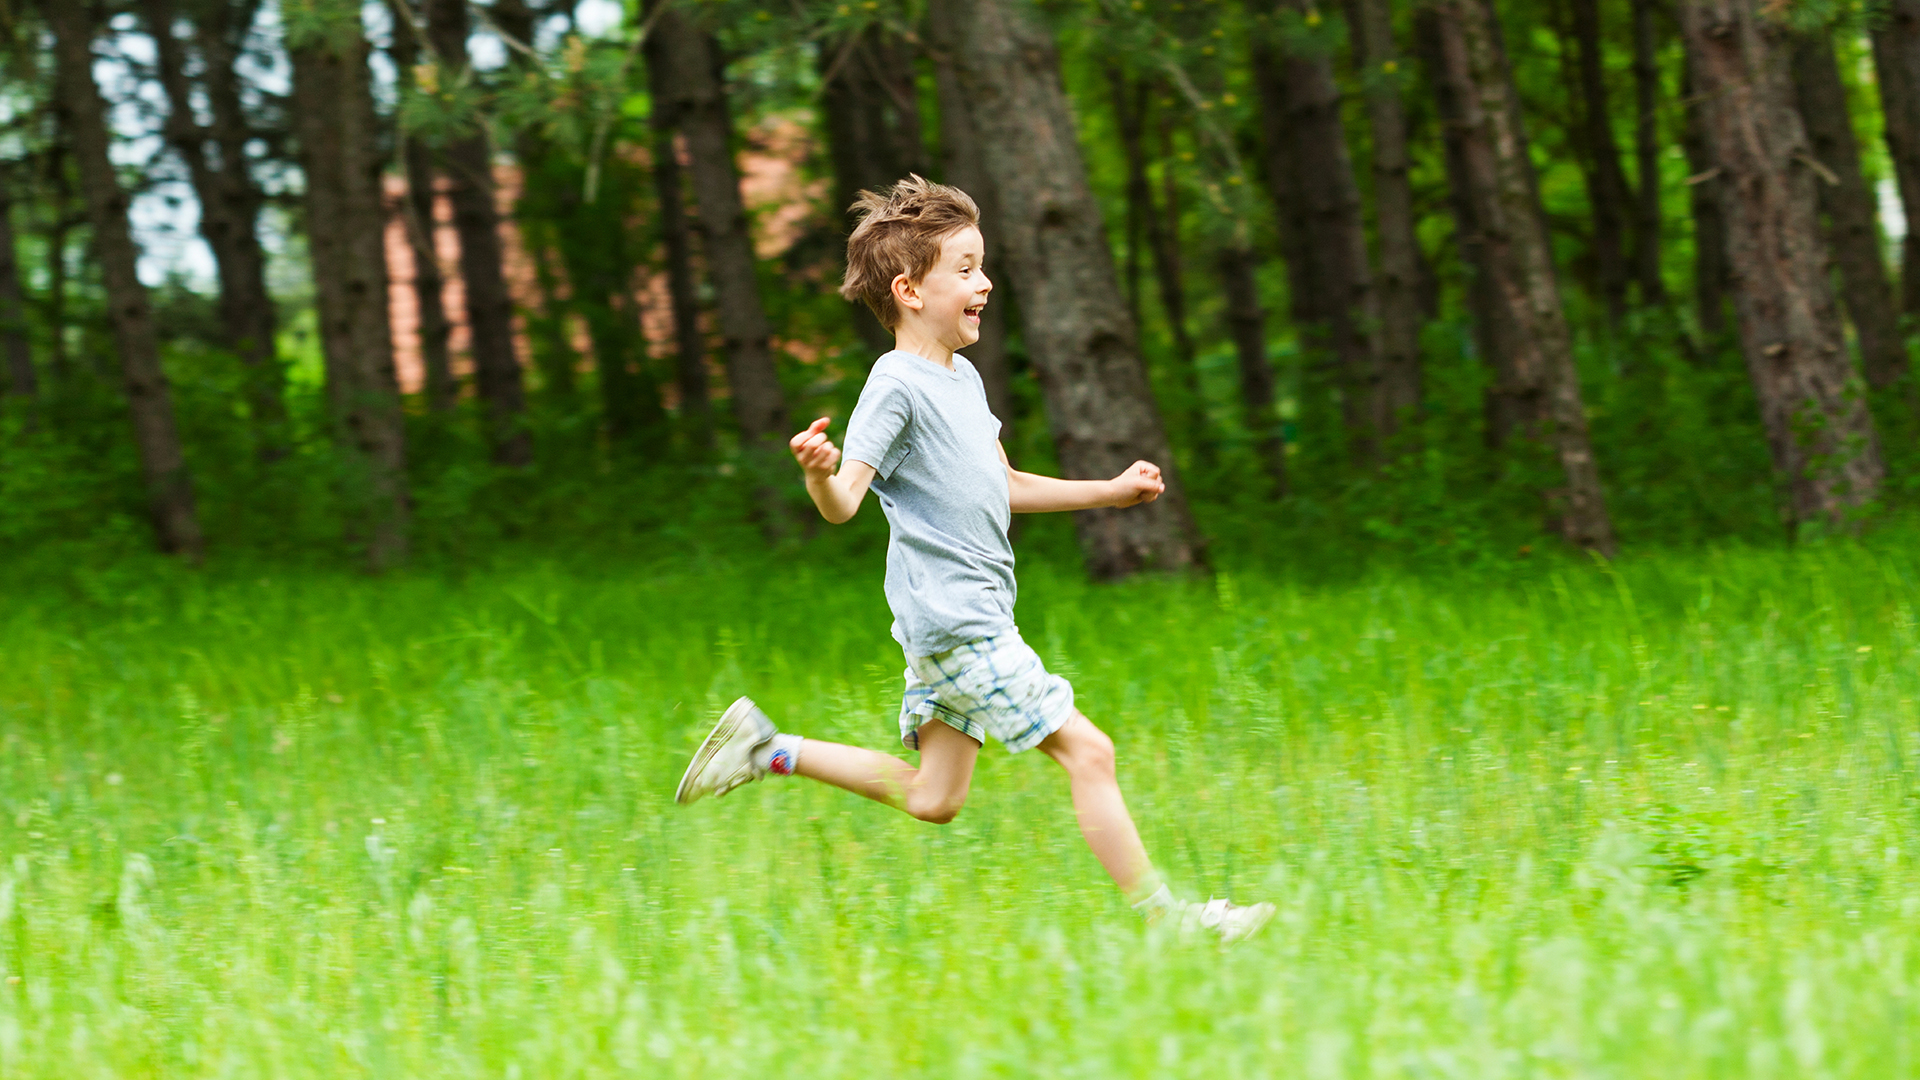 boy running in a field of grass